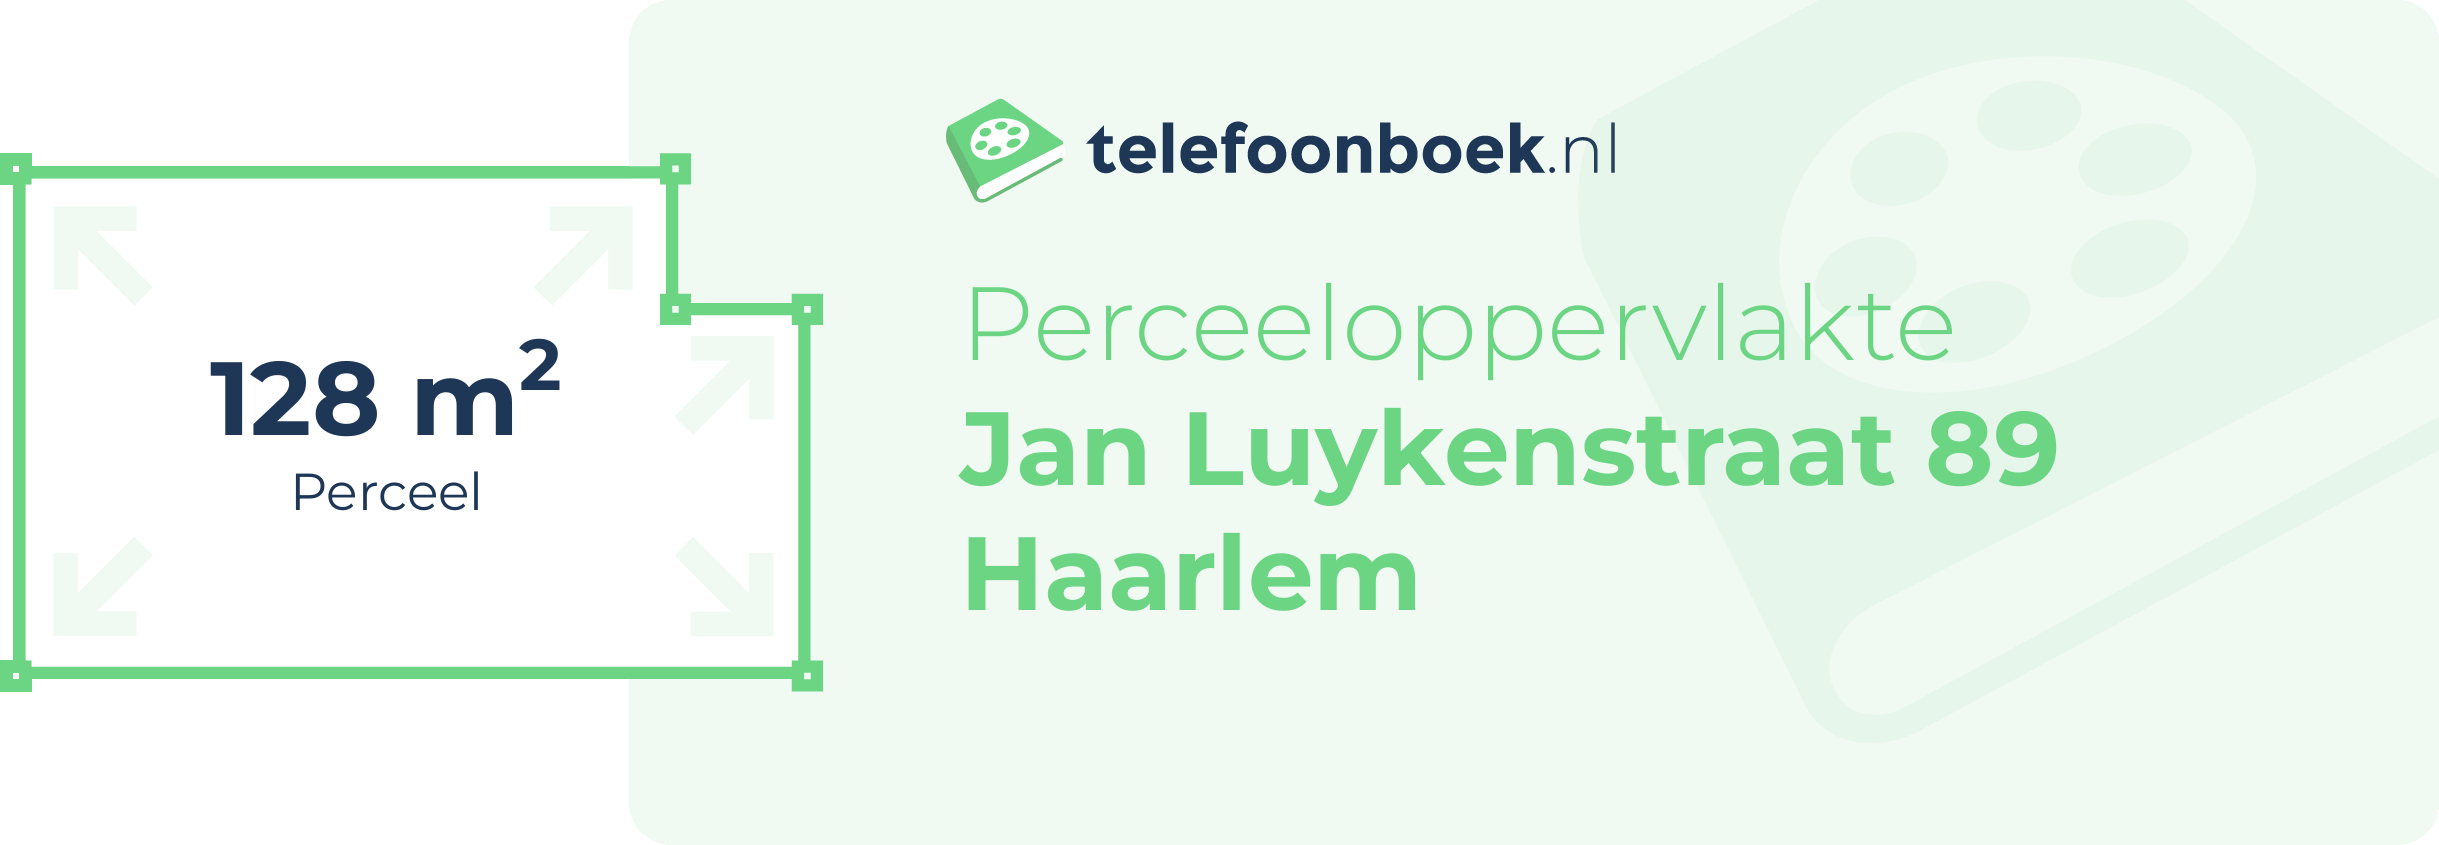 Perceeloppervlakte Jan Luykenstraat 89 Haarlem